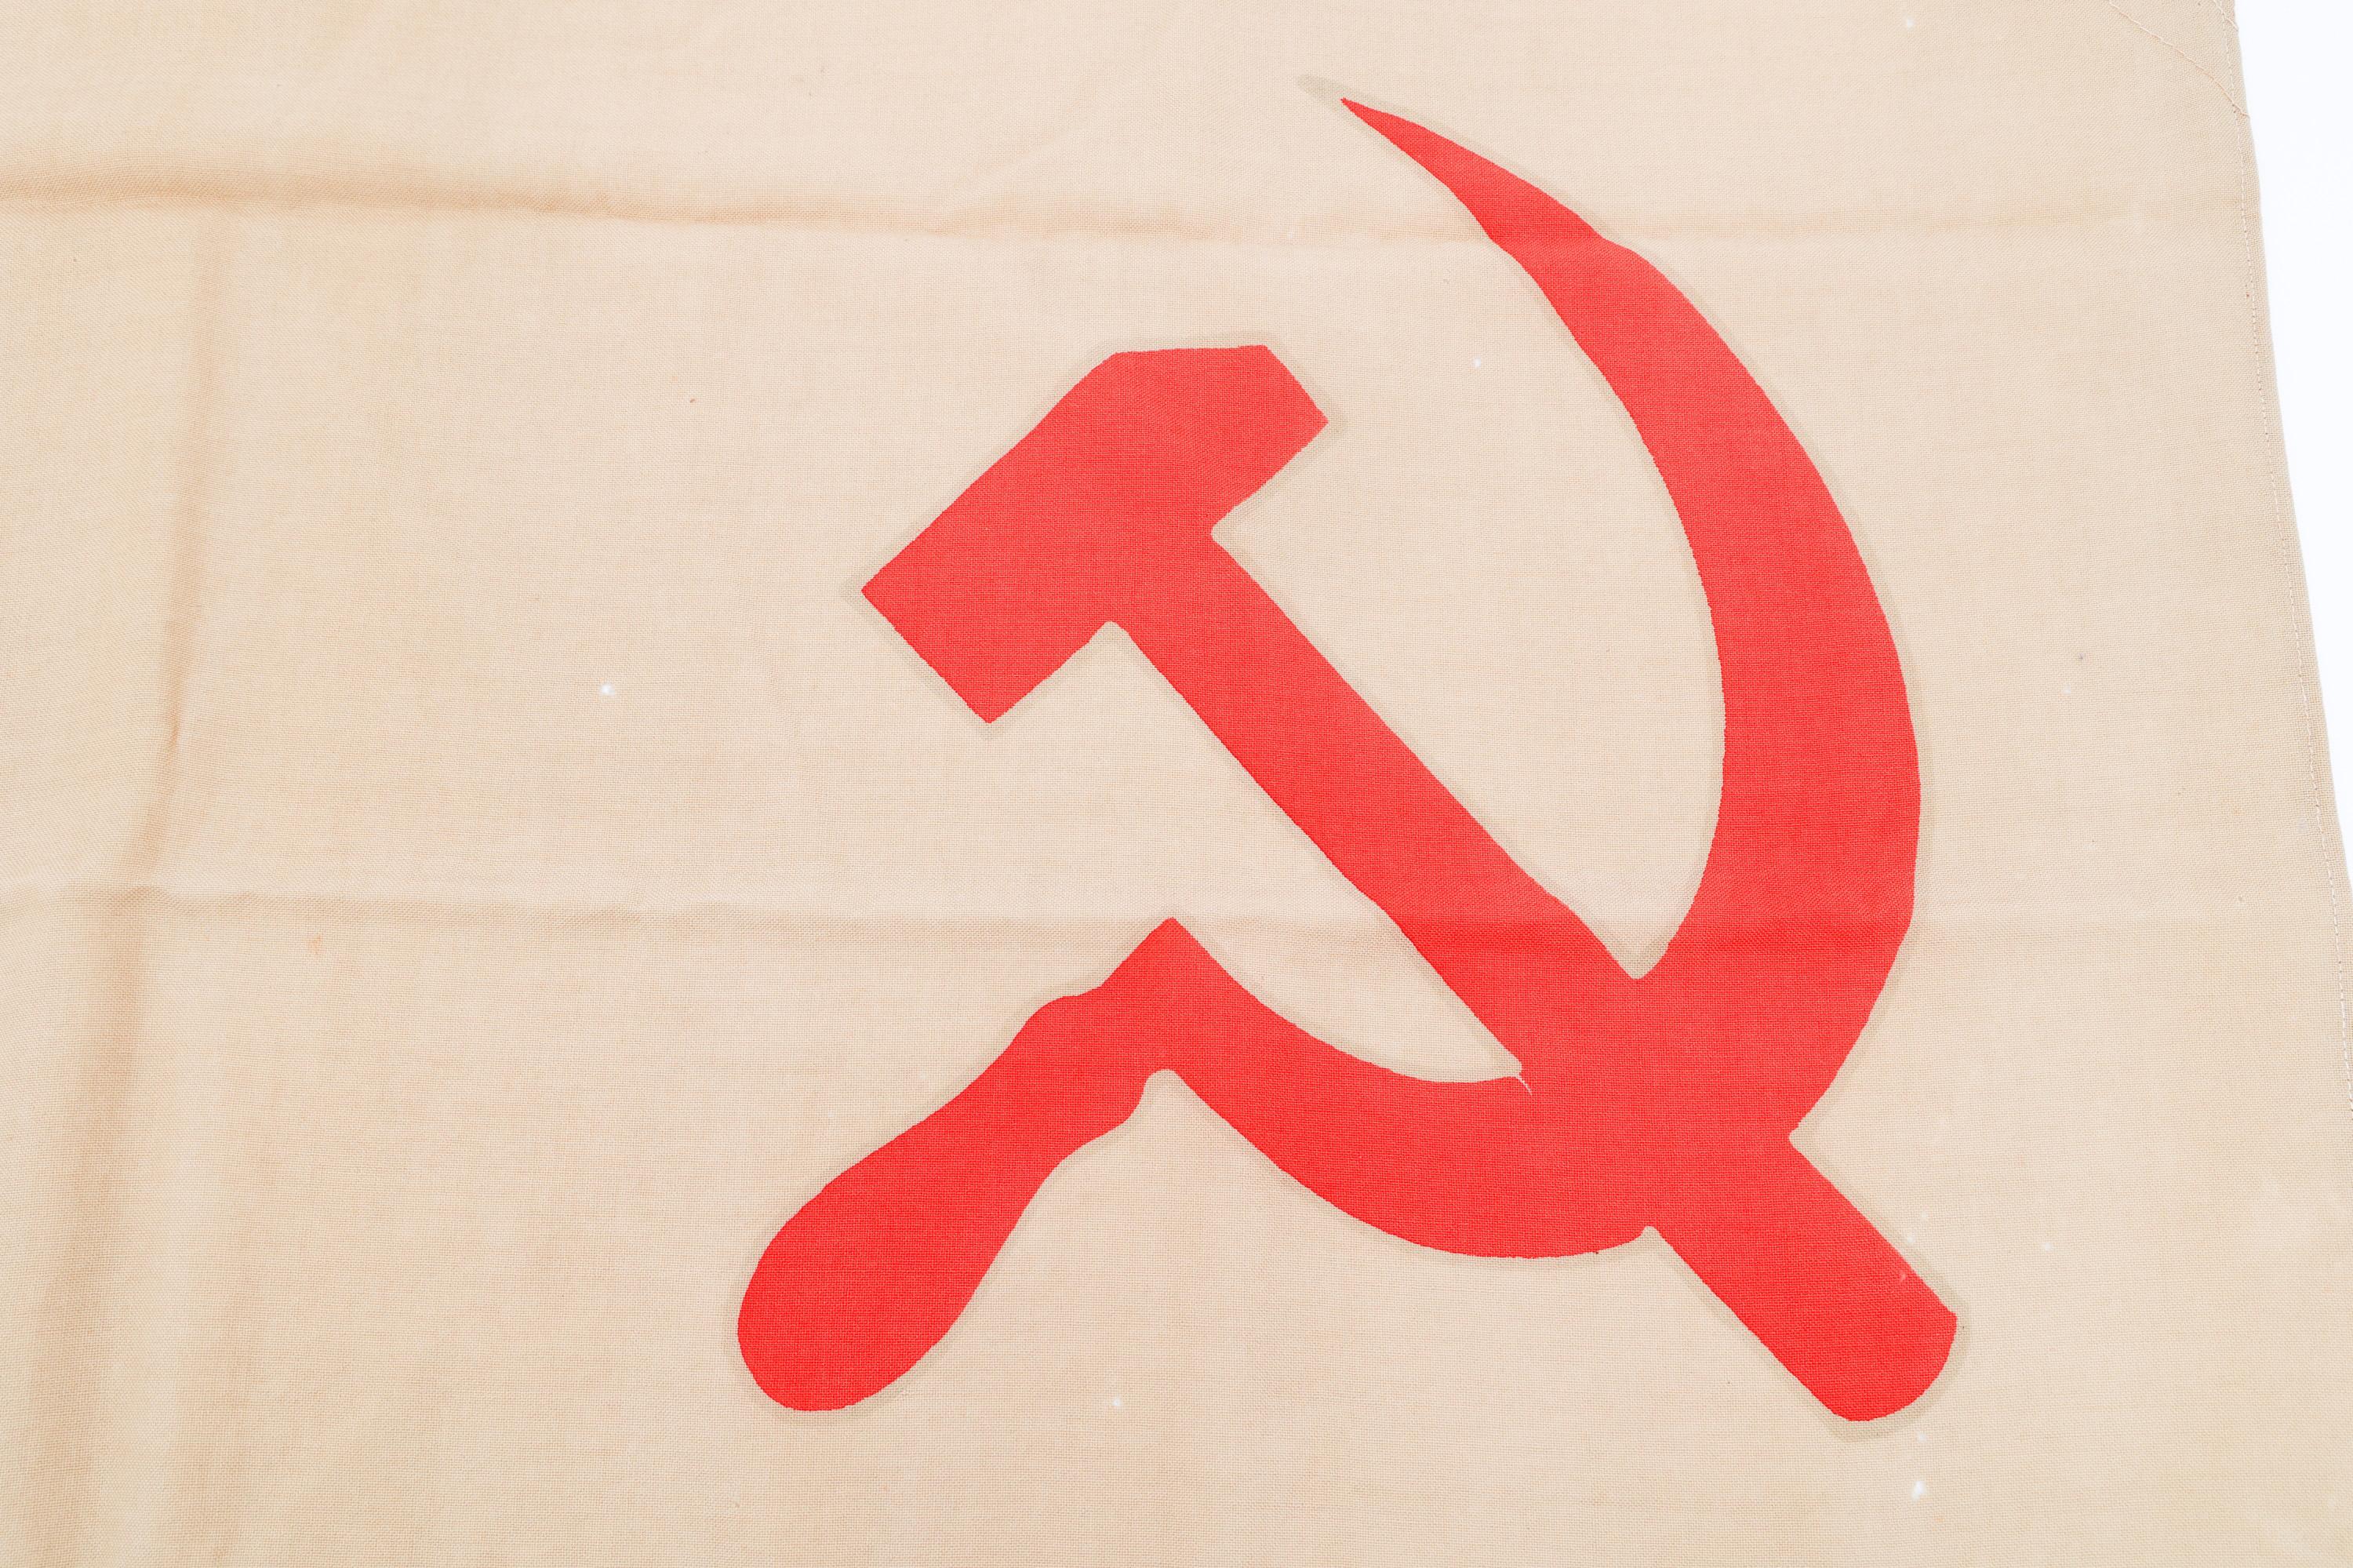 COLD WAR USSR SOVIET NAVY FLAG